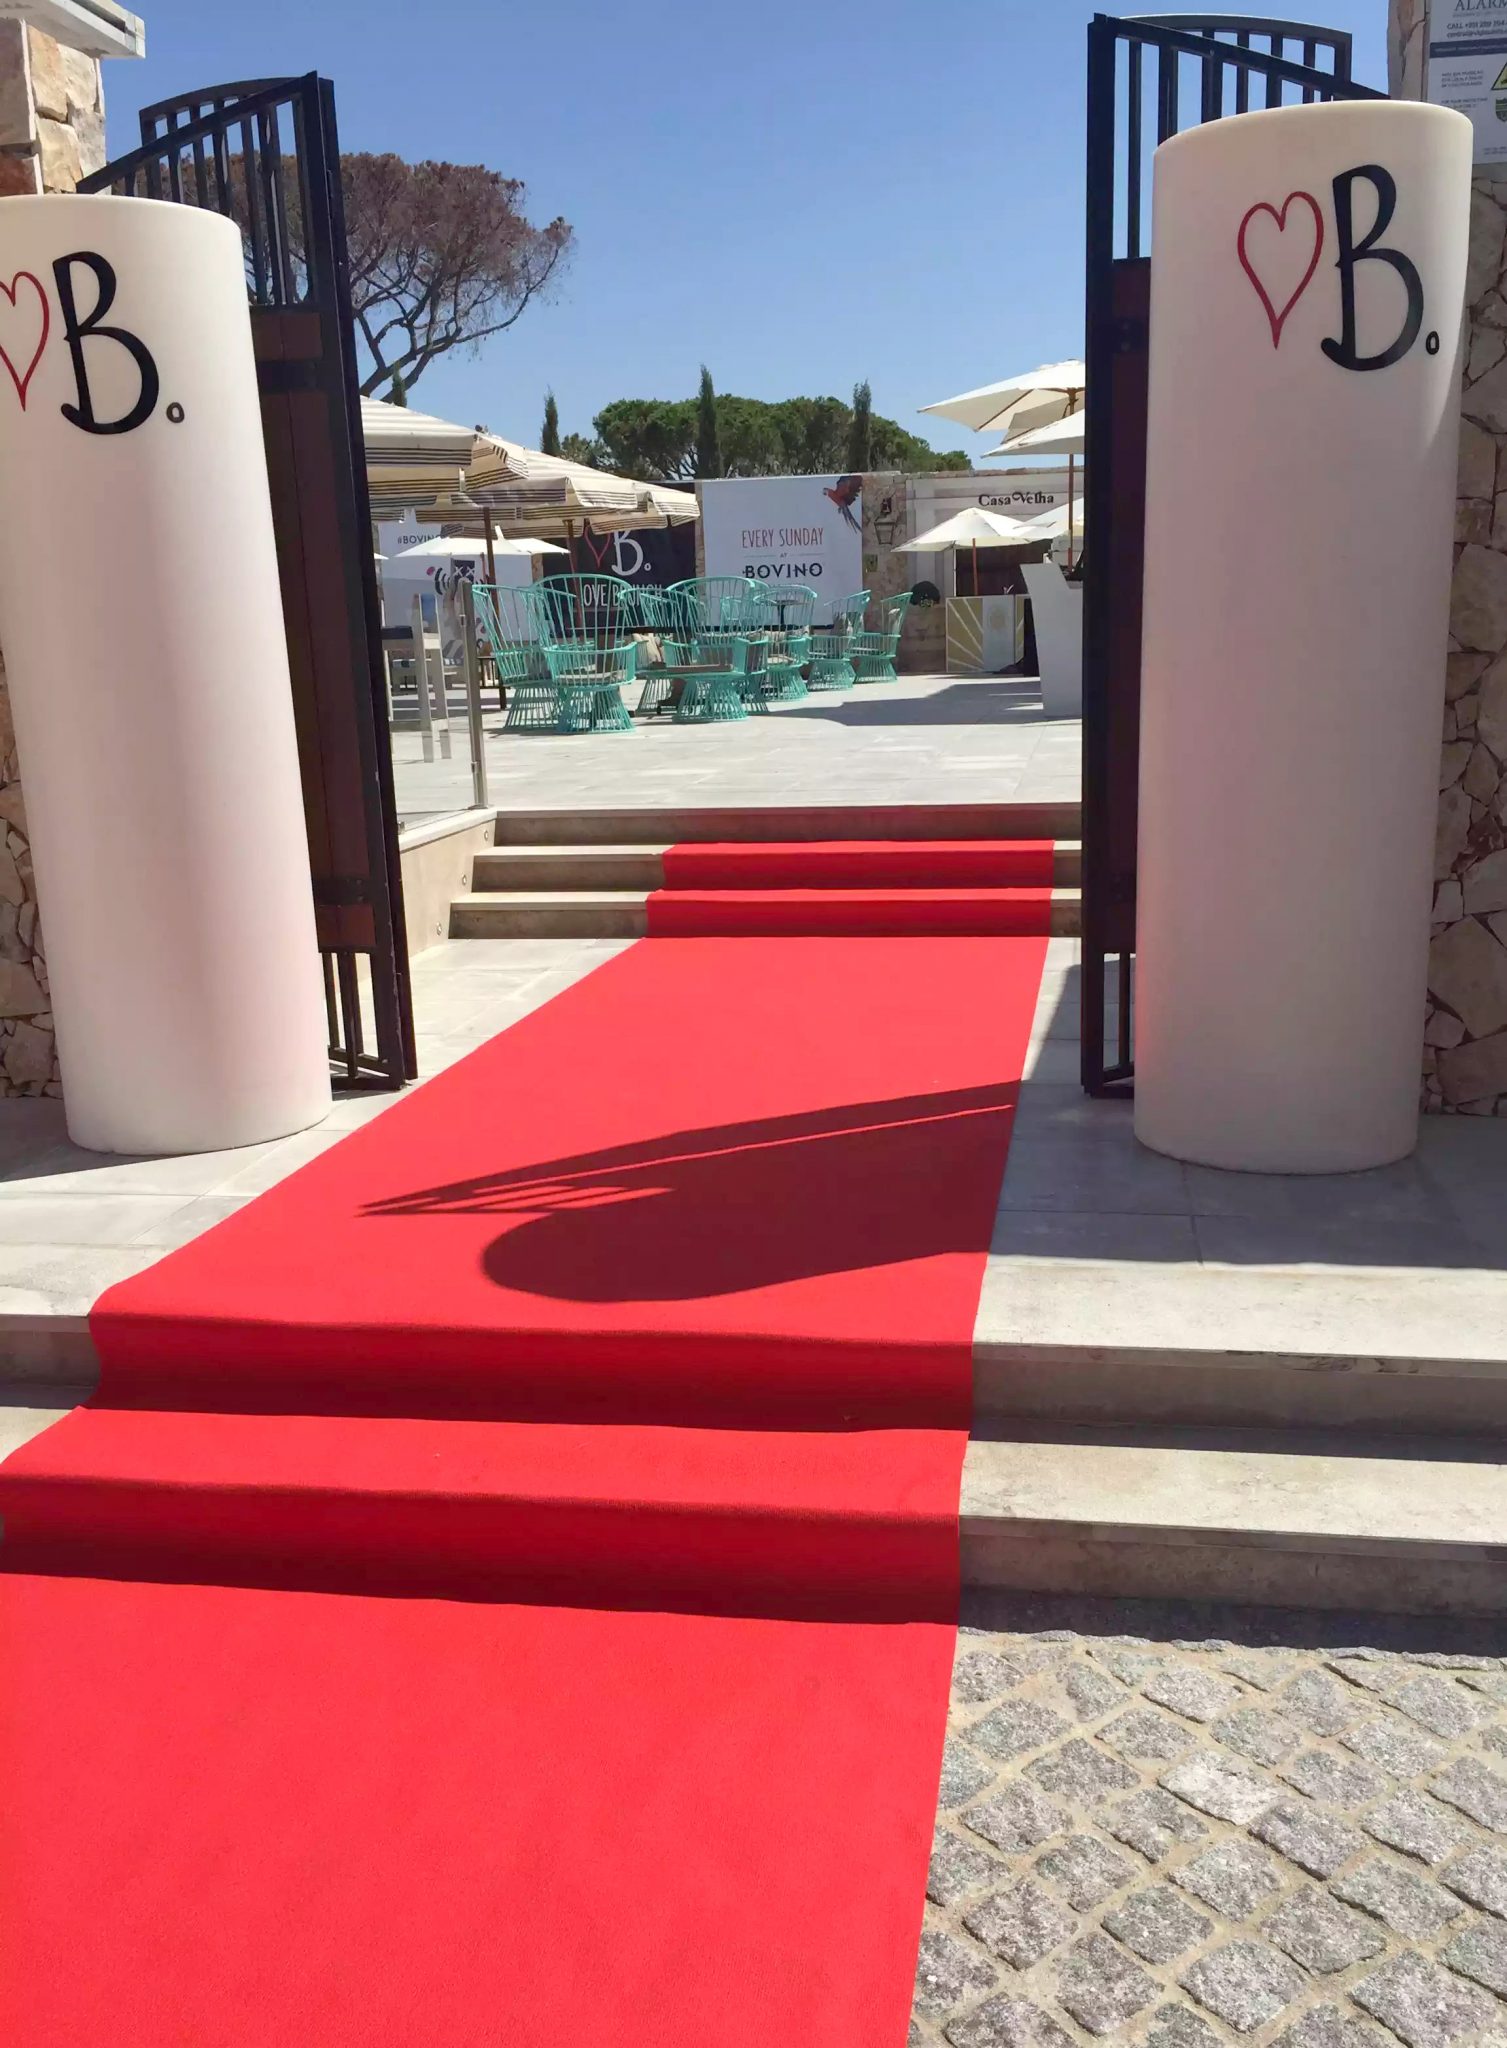 Bovino Love Brunch Quinta do Lago Algarve Portugal Red carpet